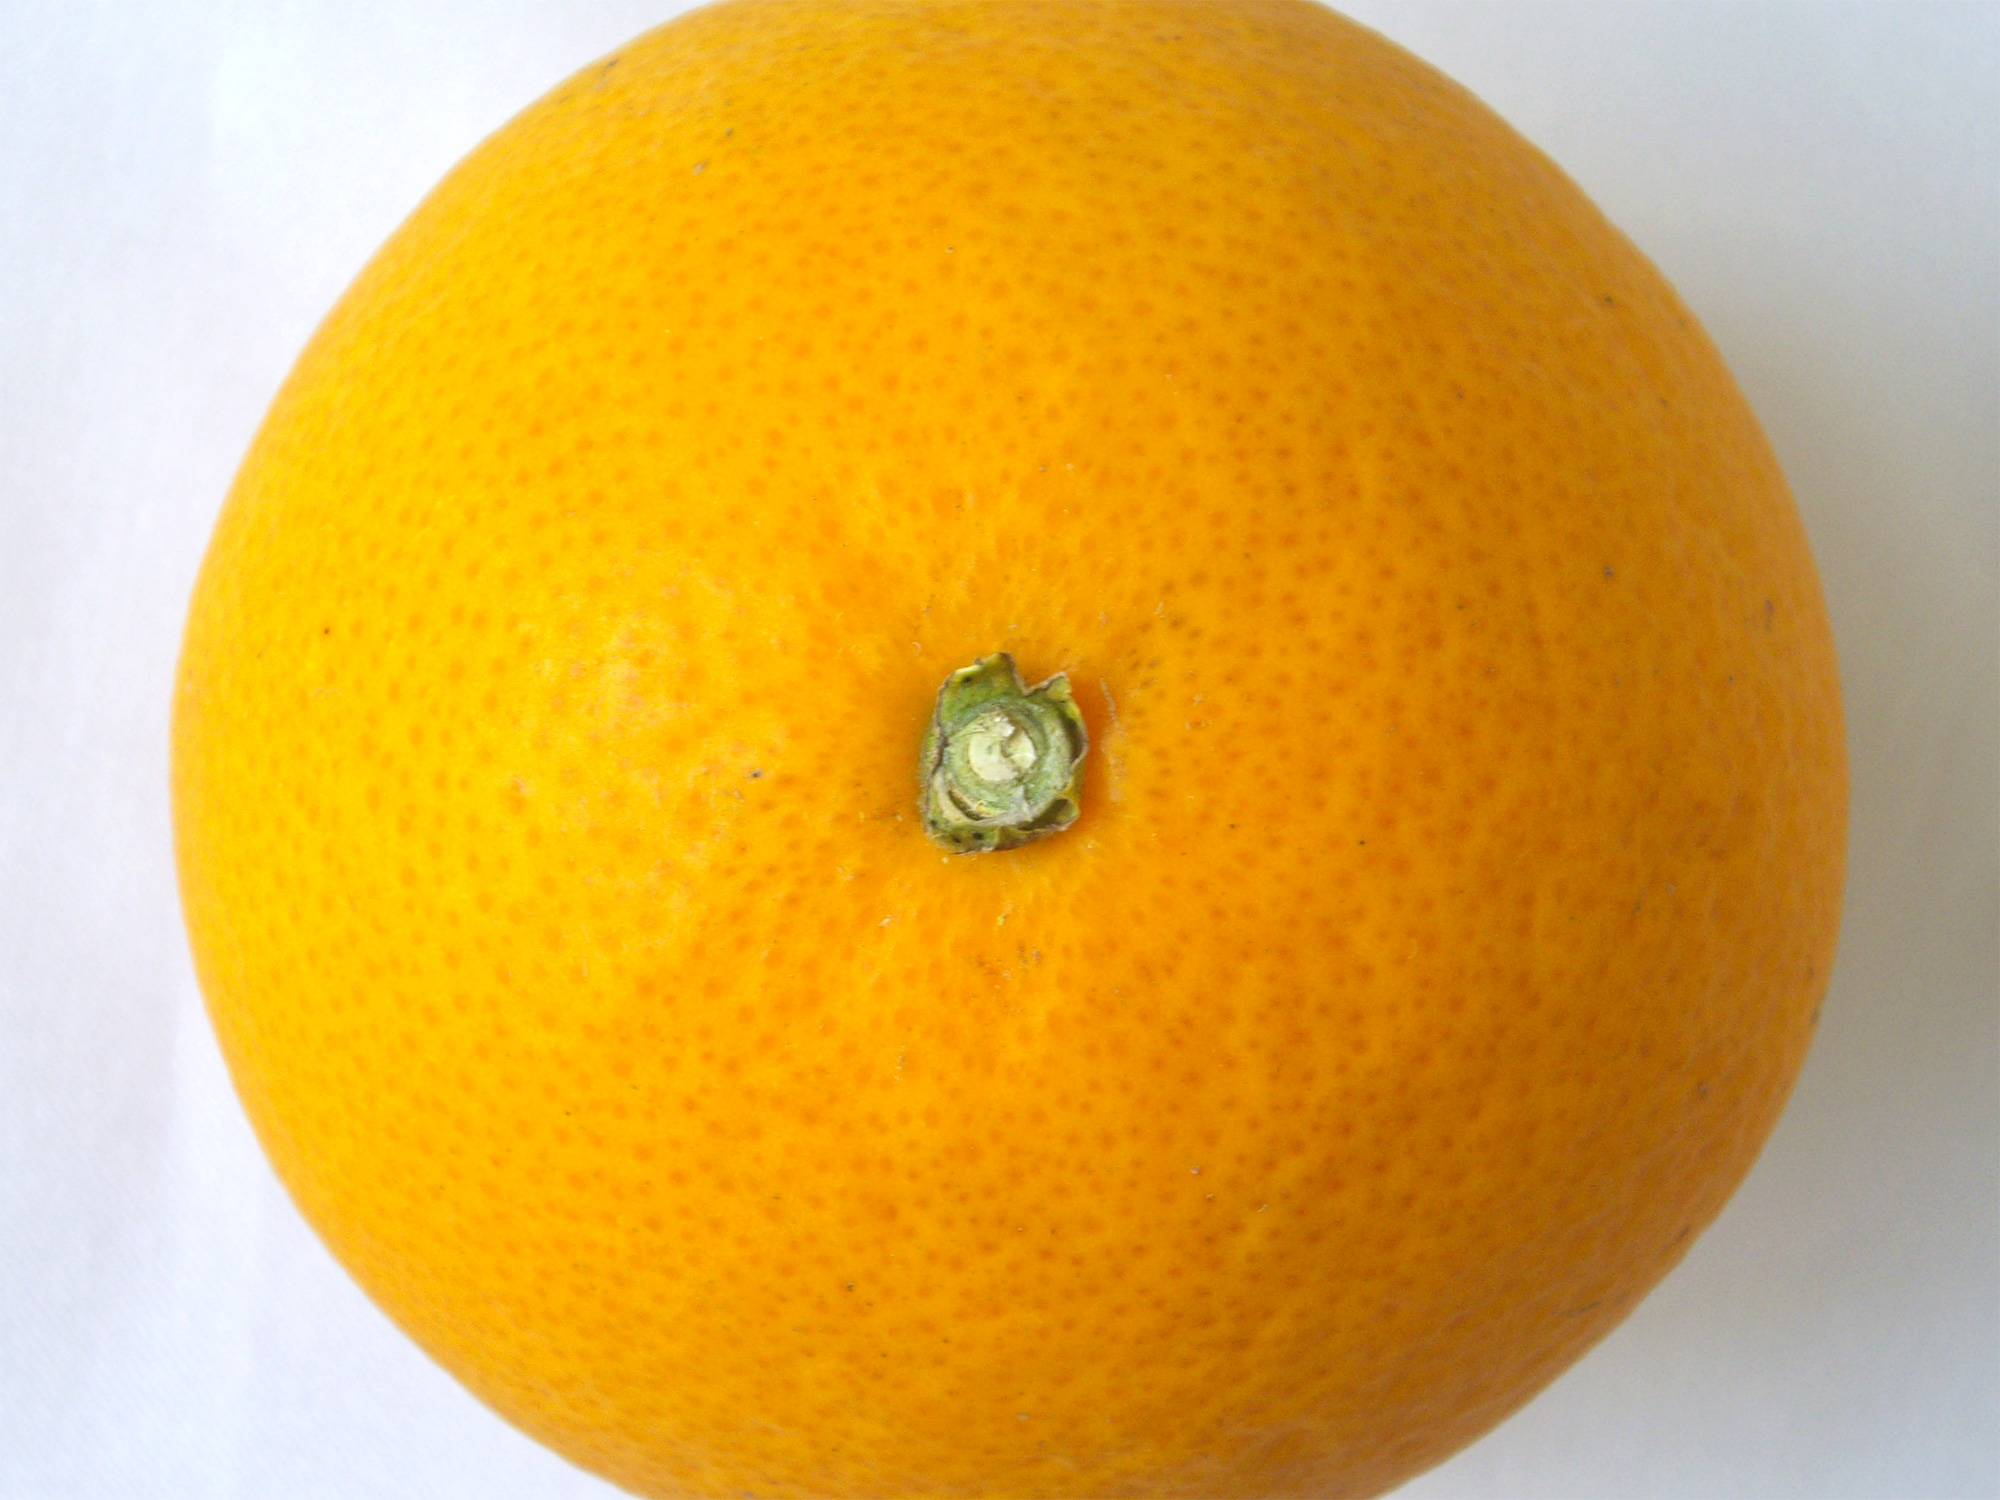 オレンジの無料写真素材 フリー